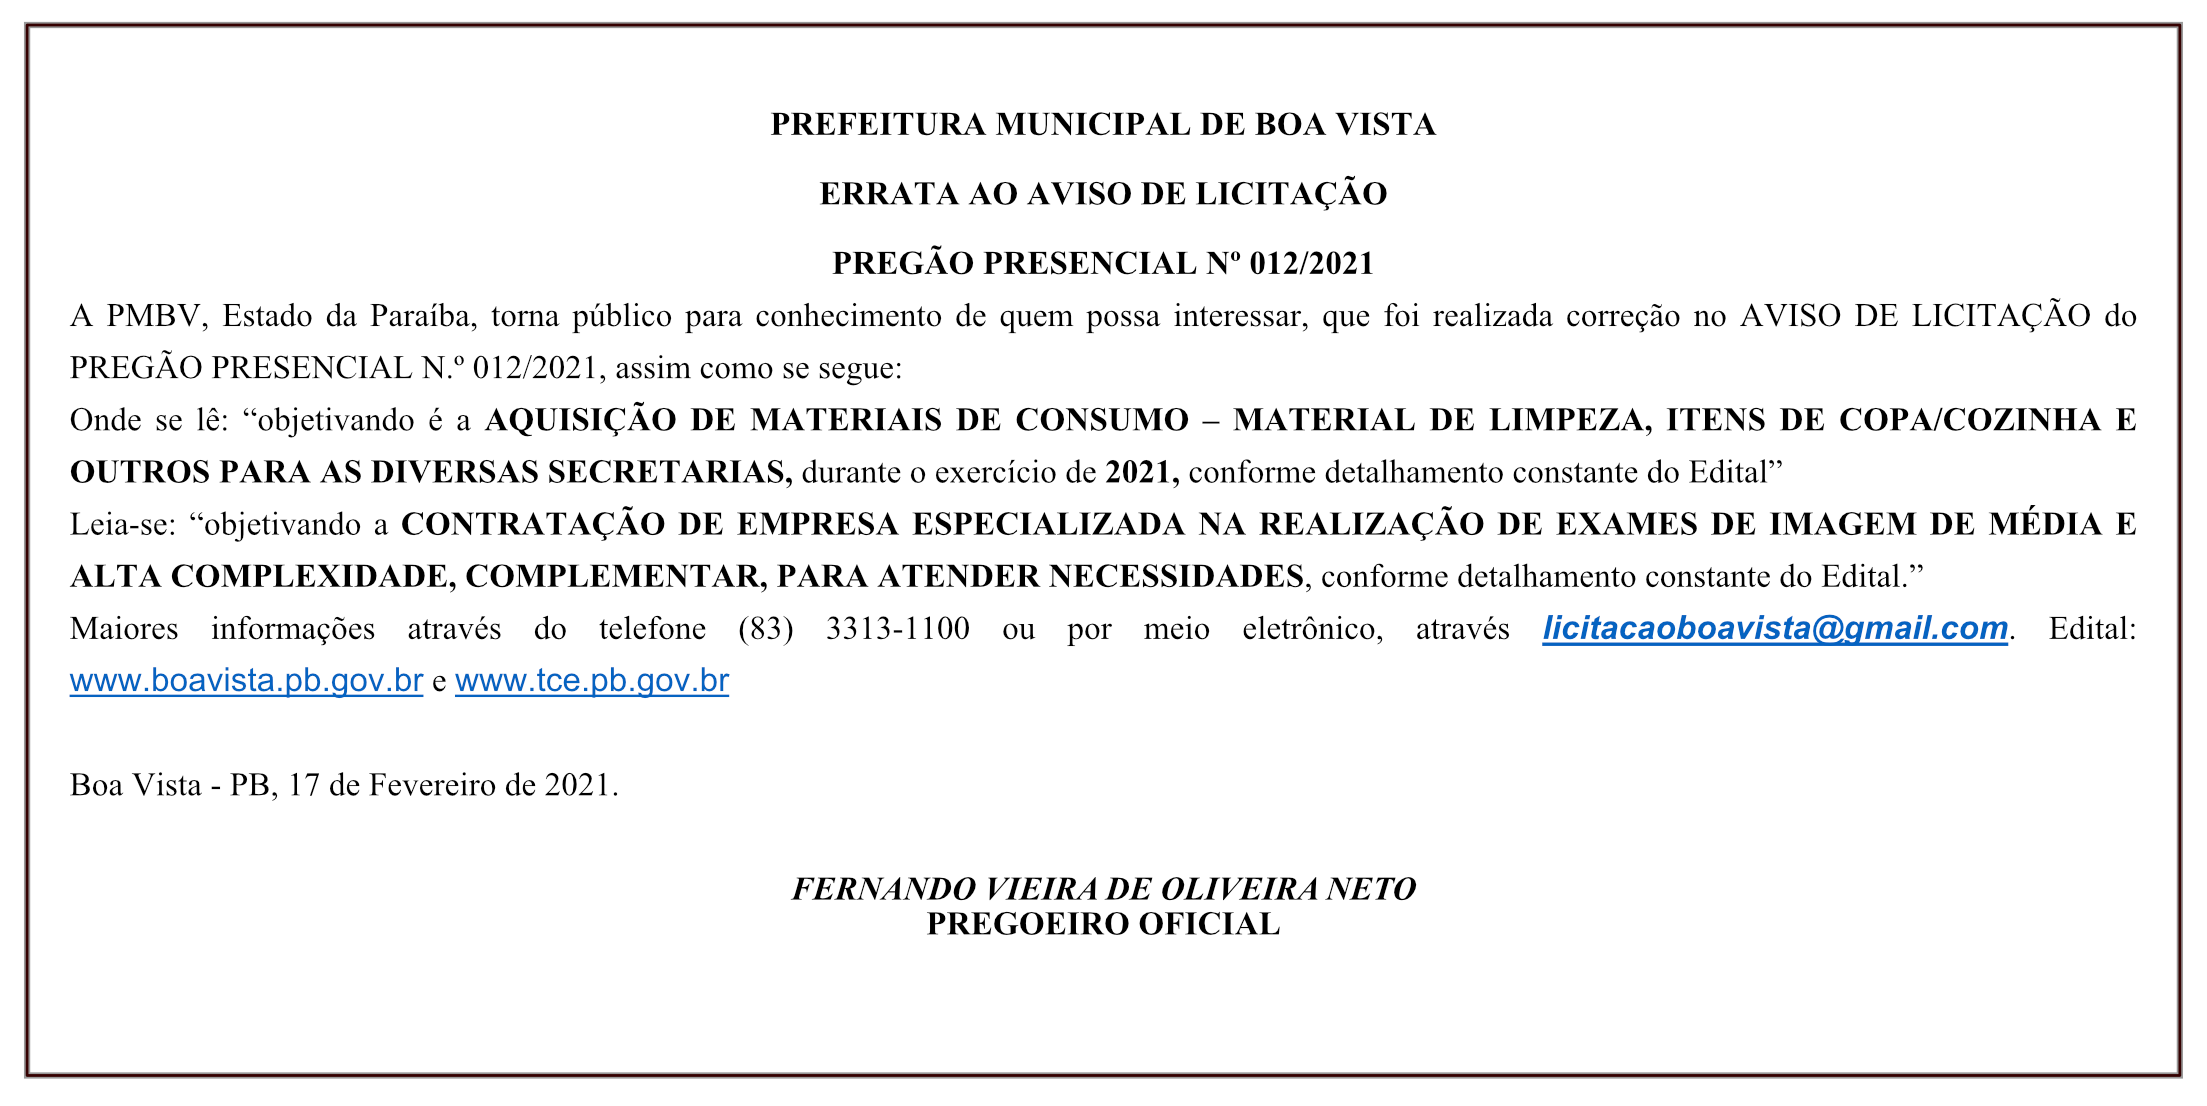 PREFEITURA MUNICIPAL DE BOA VISTA – ERRATA AO AVISO DE LICITAÇÃO – PREGÃO PRESENCIAL Nº 012/2021